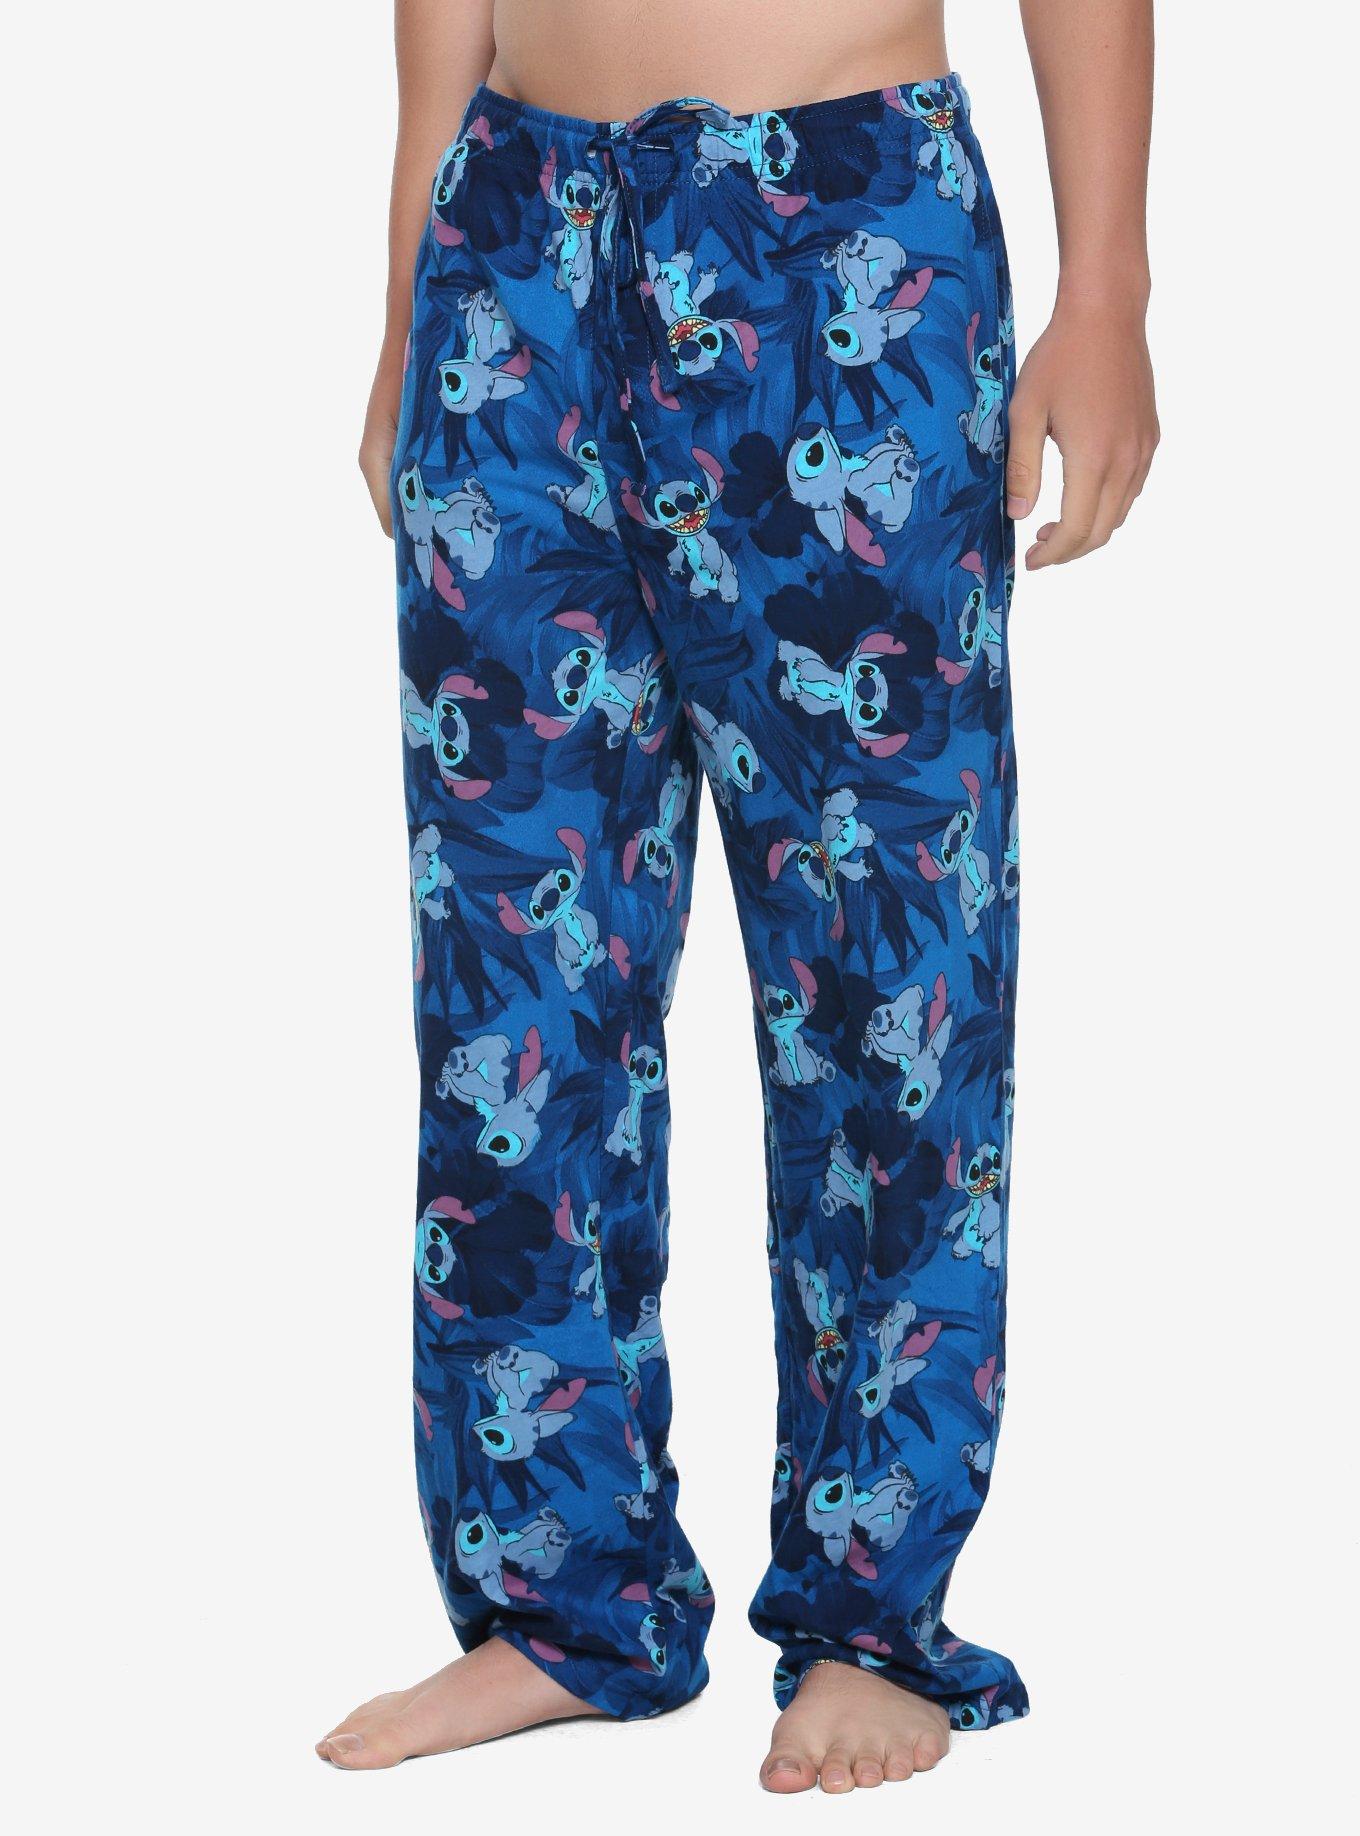  Stitch Pajamas